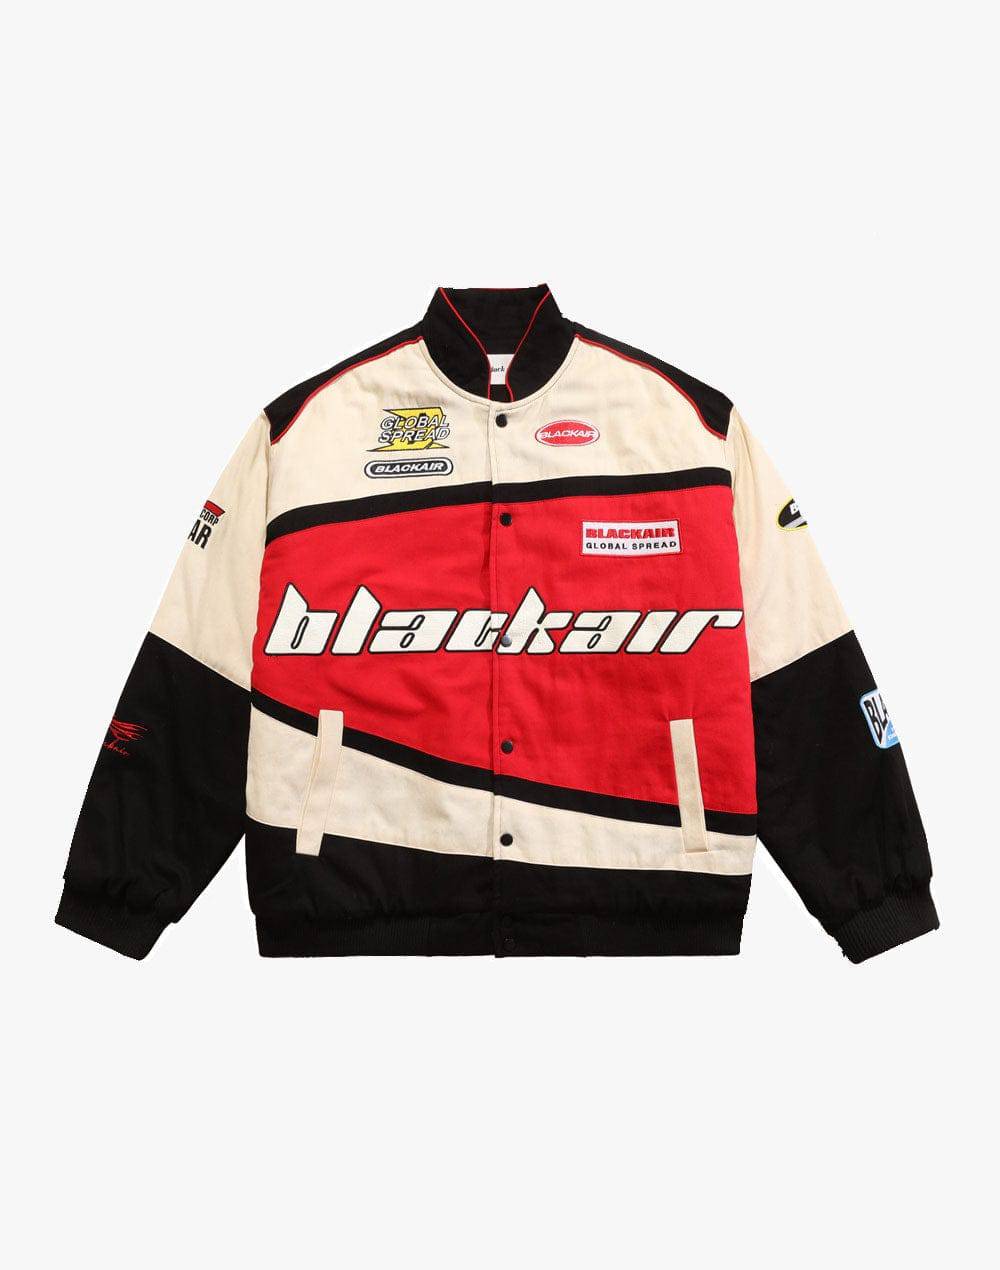 Blackair Racing Jacket | Primo Collection